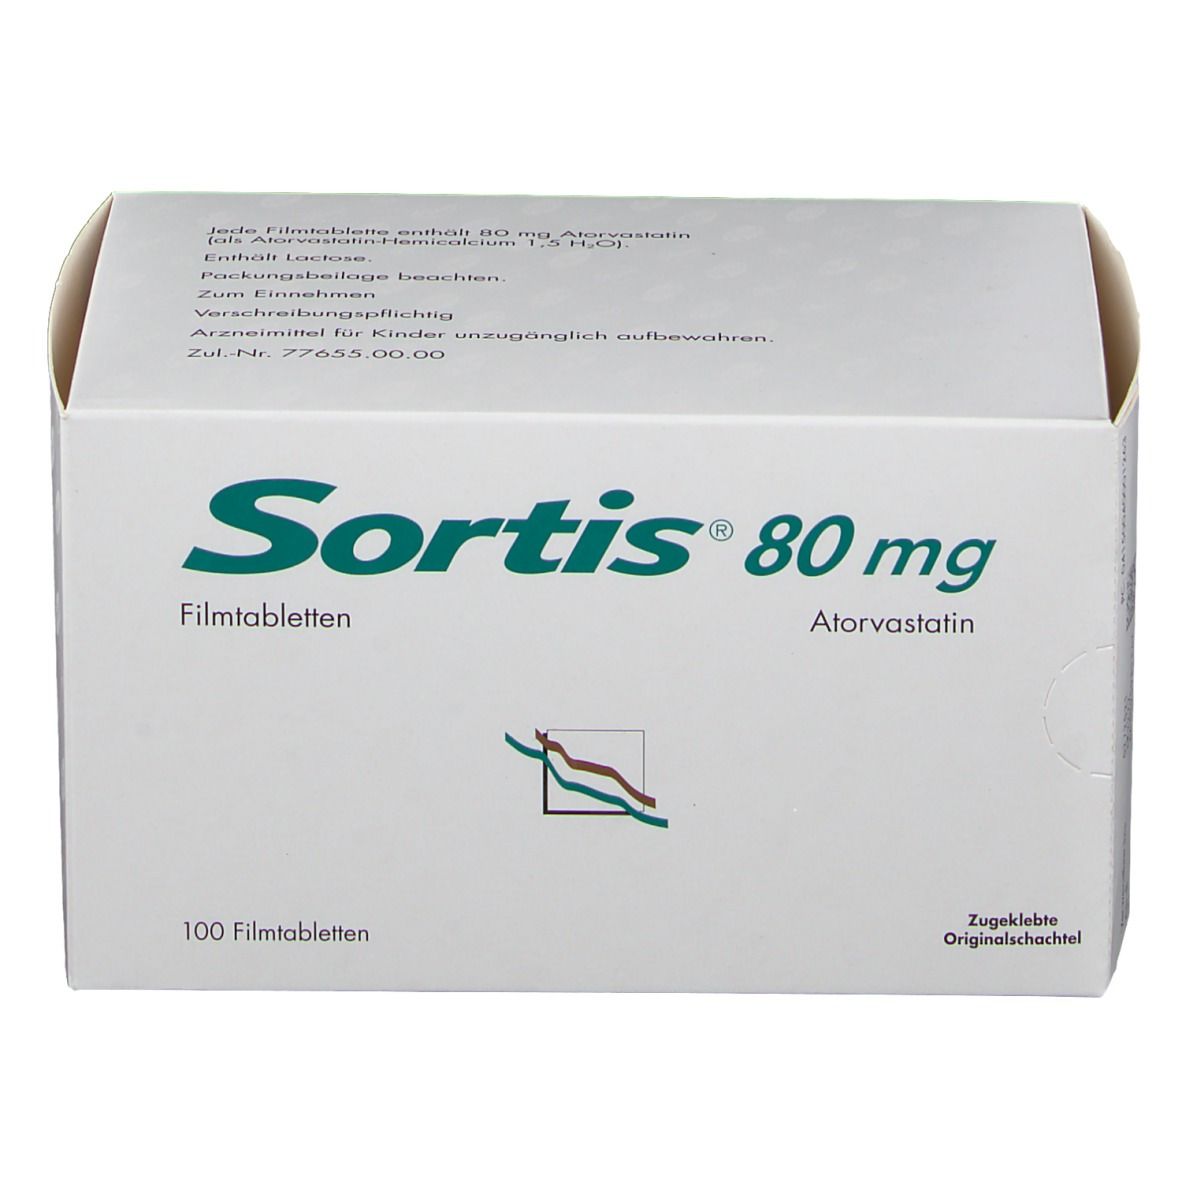 Sortis® 80 mg